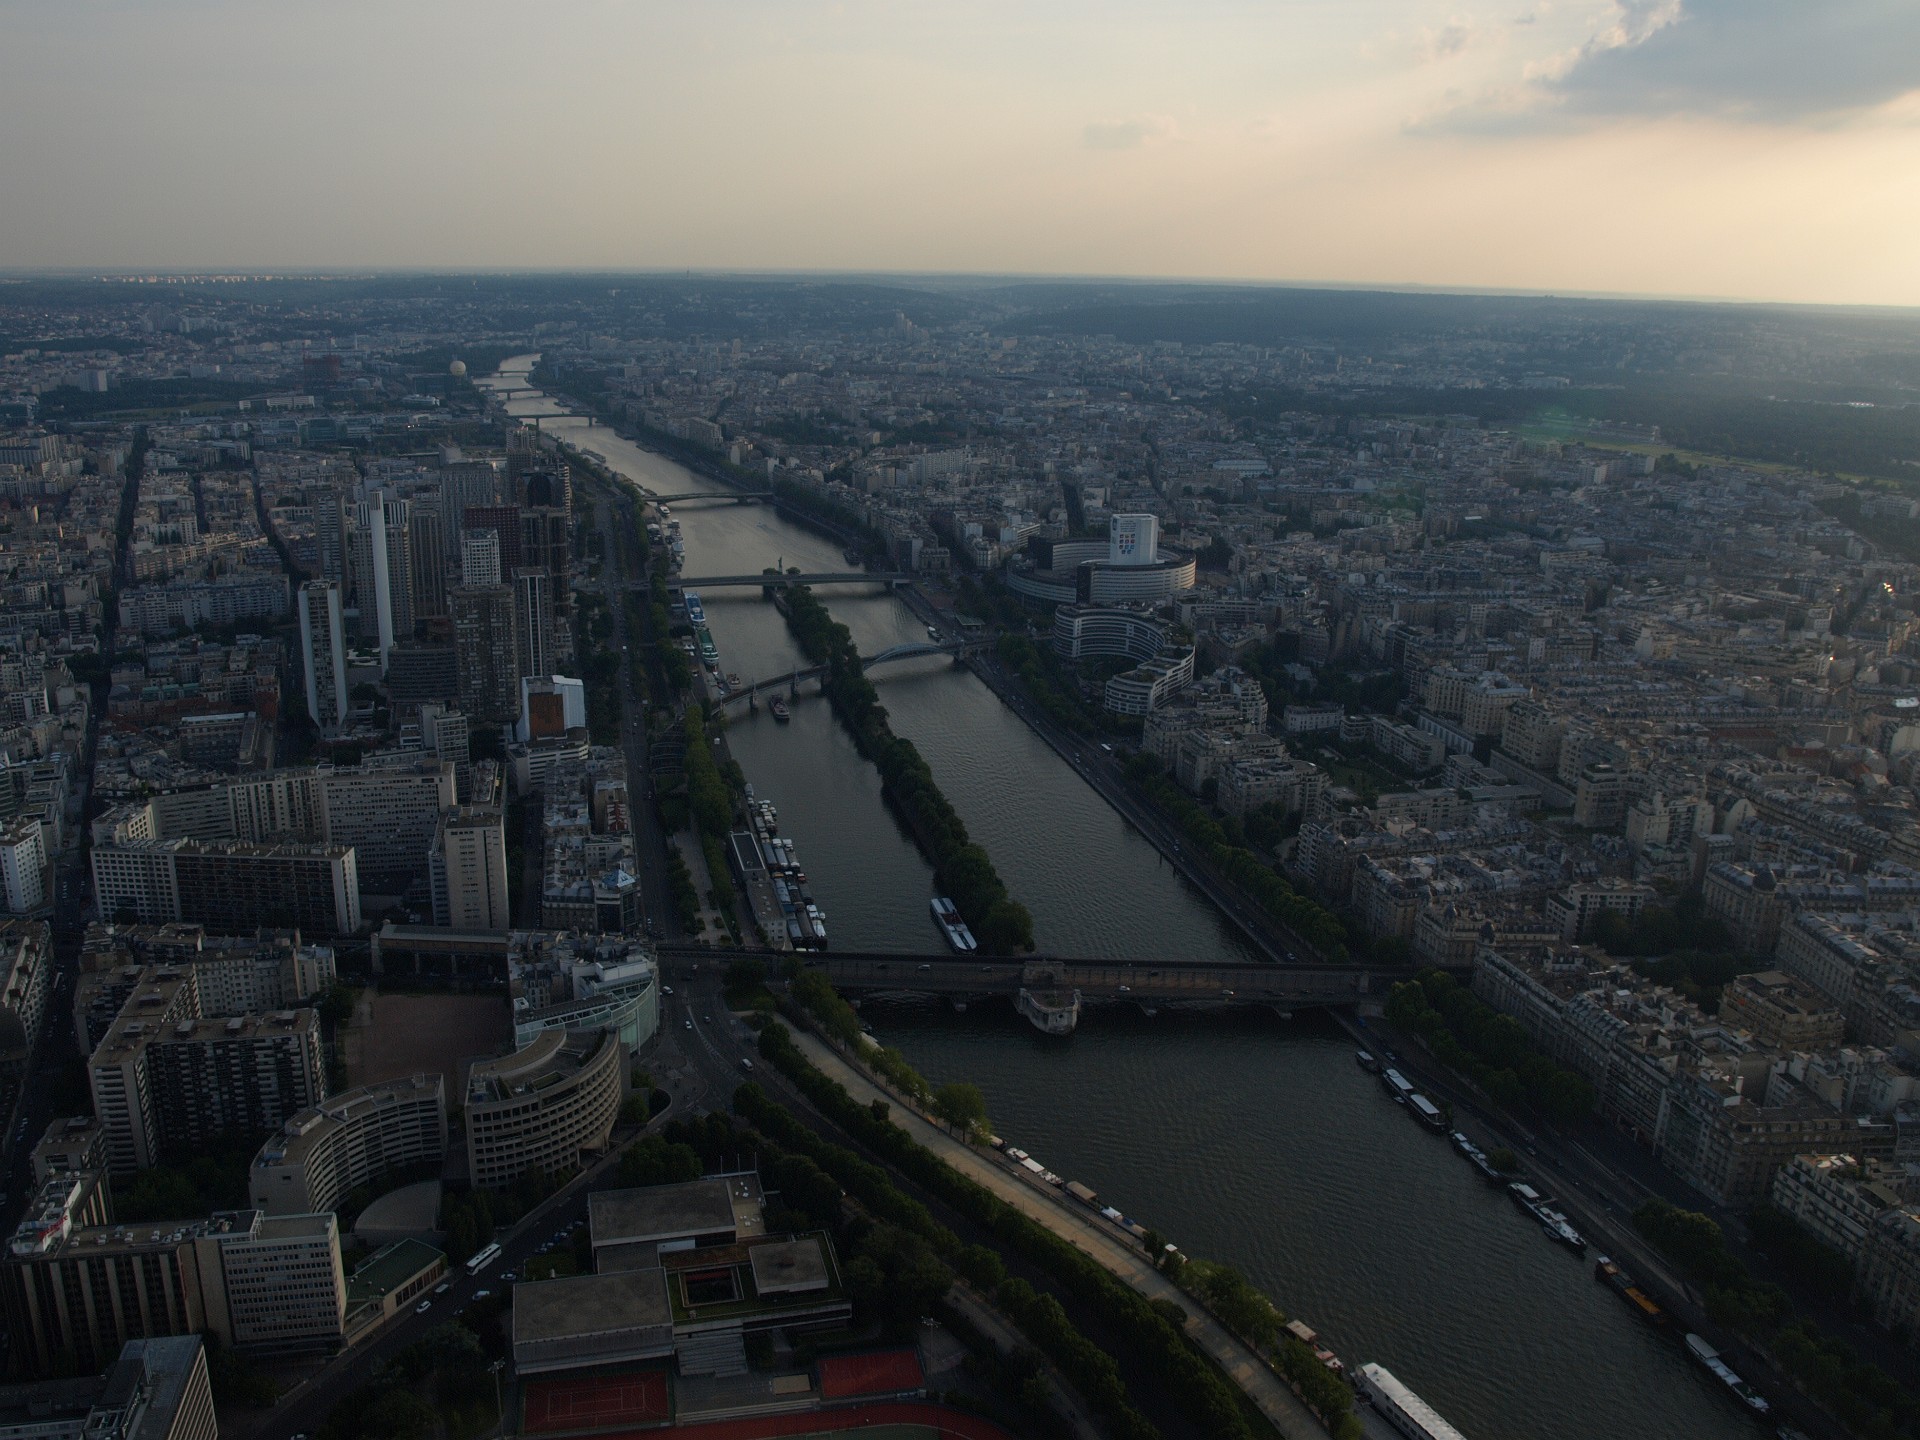 The Evening Seine